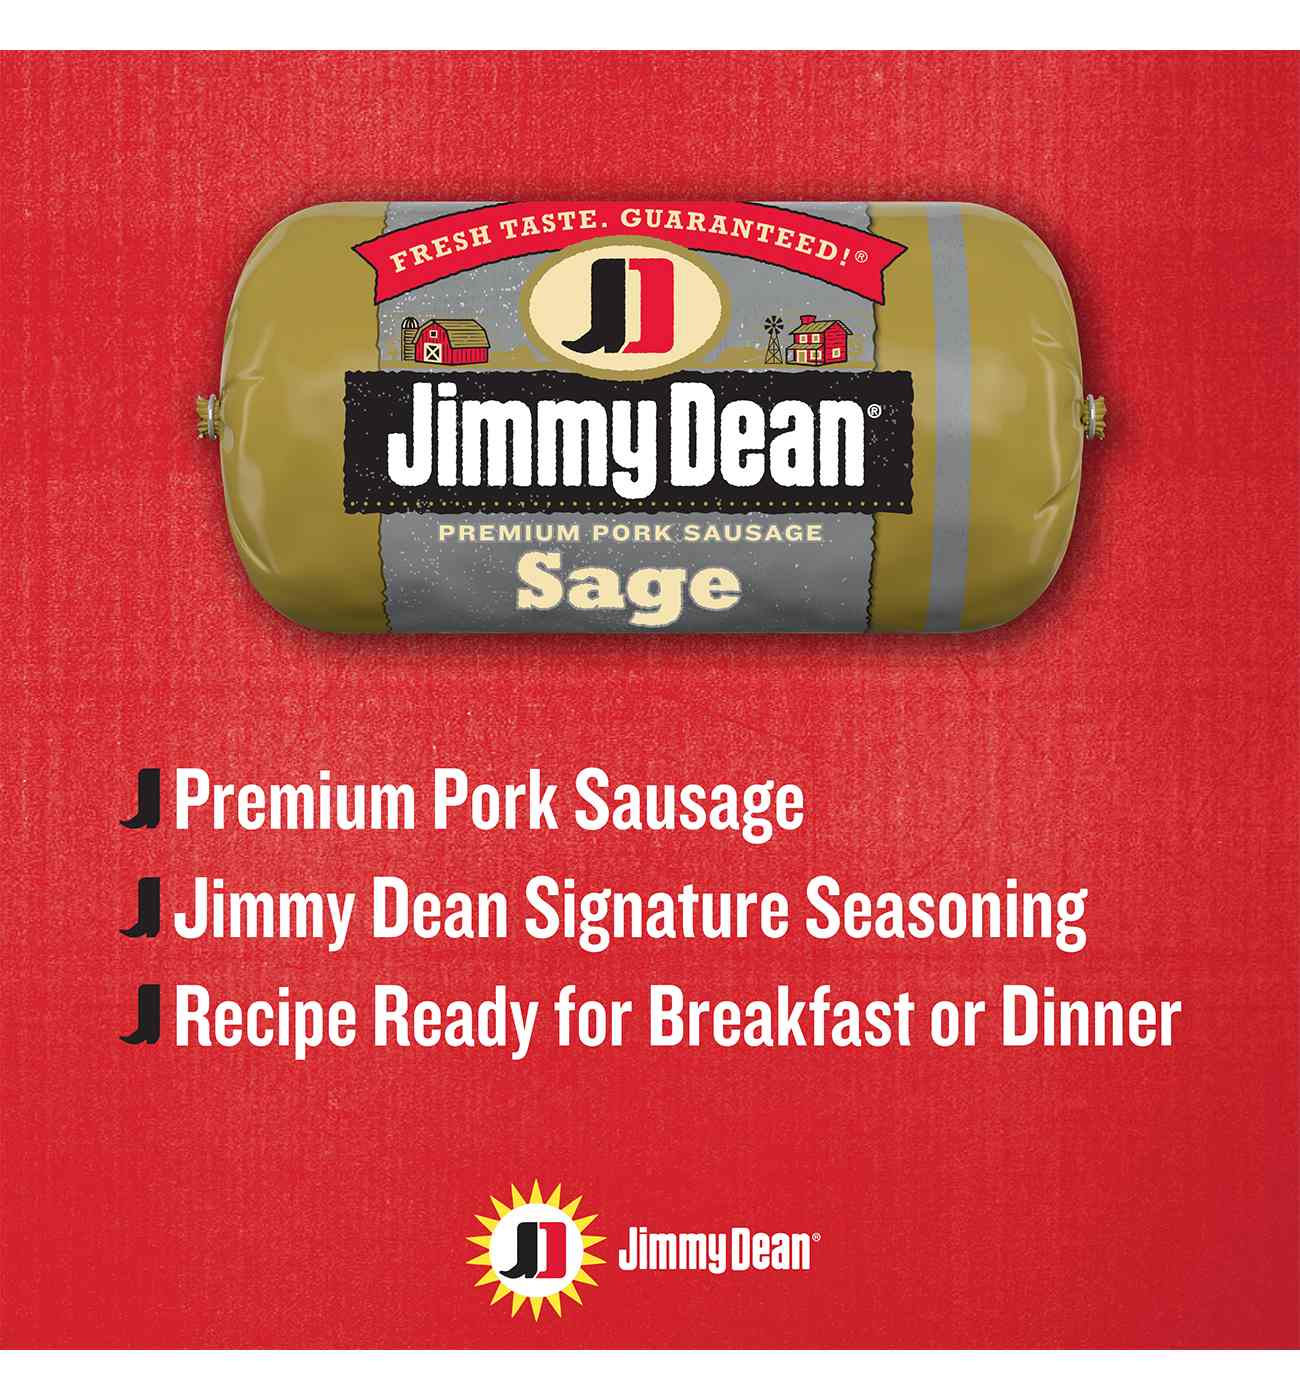 Jimmy Dean Premium Pork Breakfast Sausage - Sage; image 3 of 5